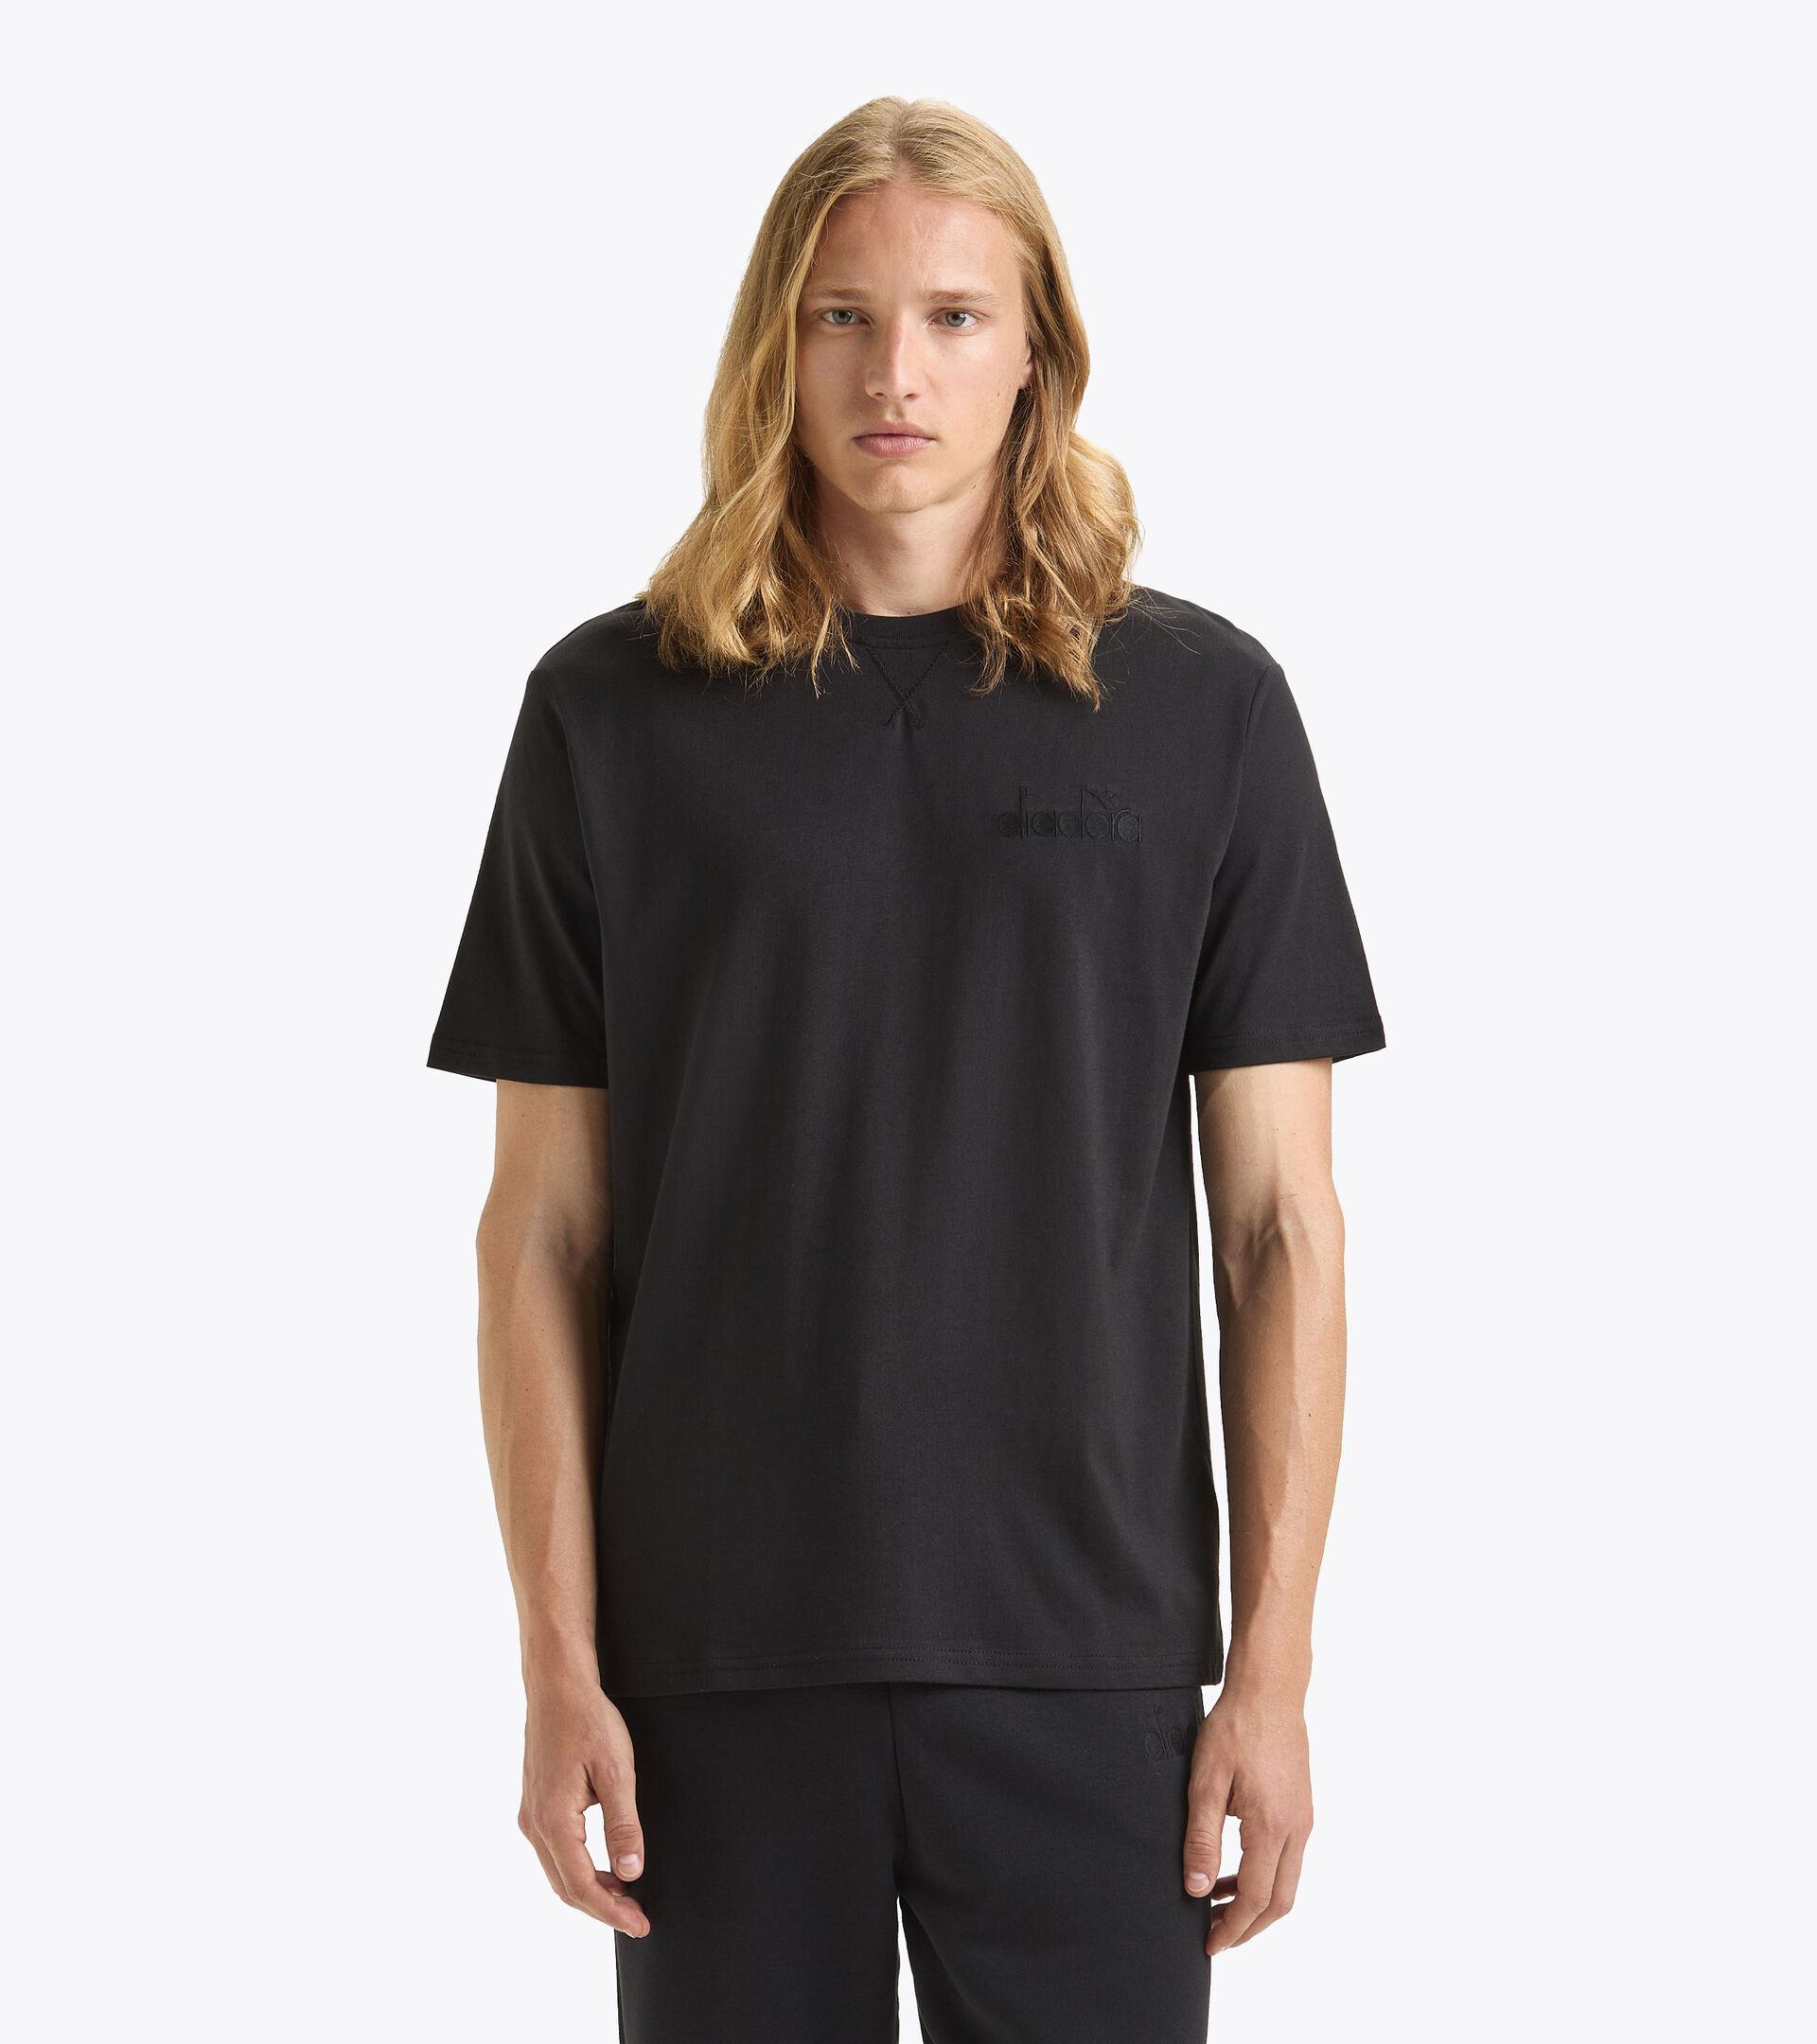 T-Shirt - Gender Neutral T-SHIRT SS ATHL. LOGO SCHWARZ - Diadora